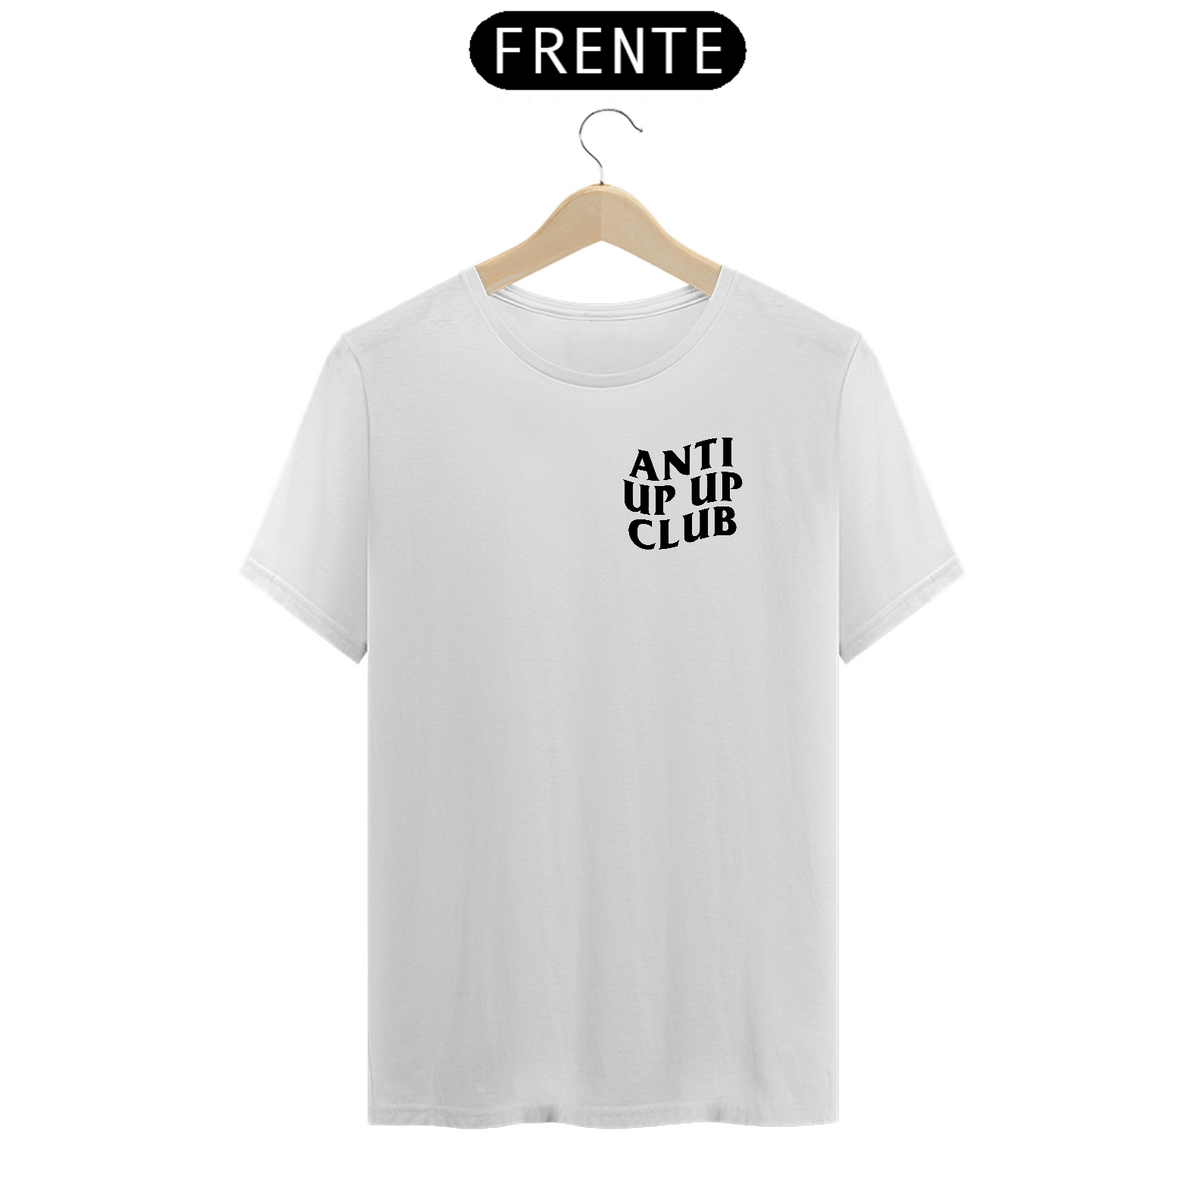 Nome do produto: Camiseta Anti Up Up Club - Frente